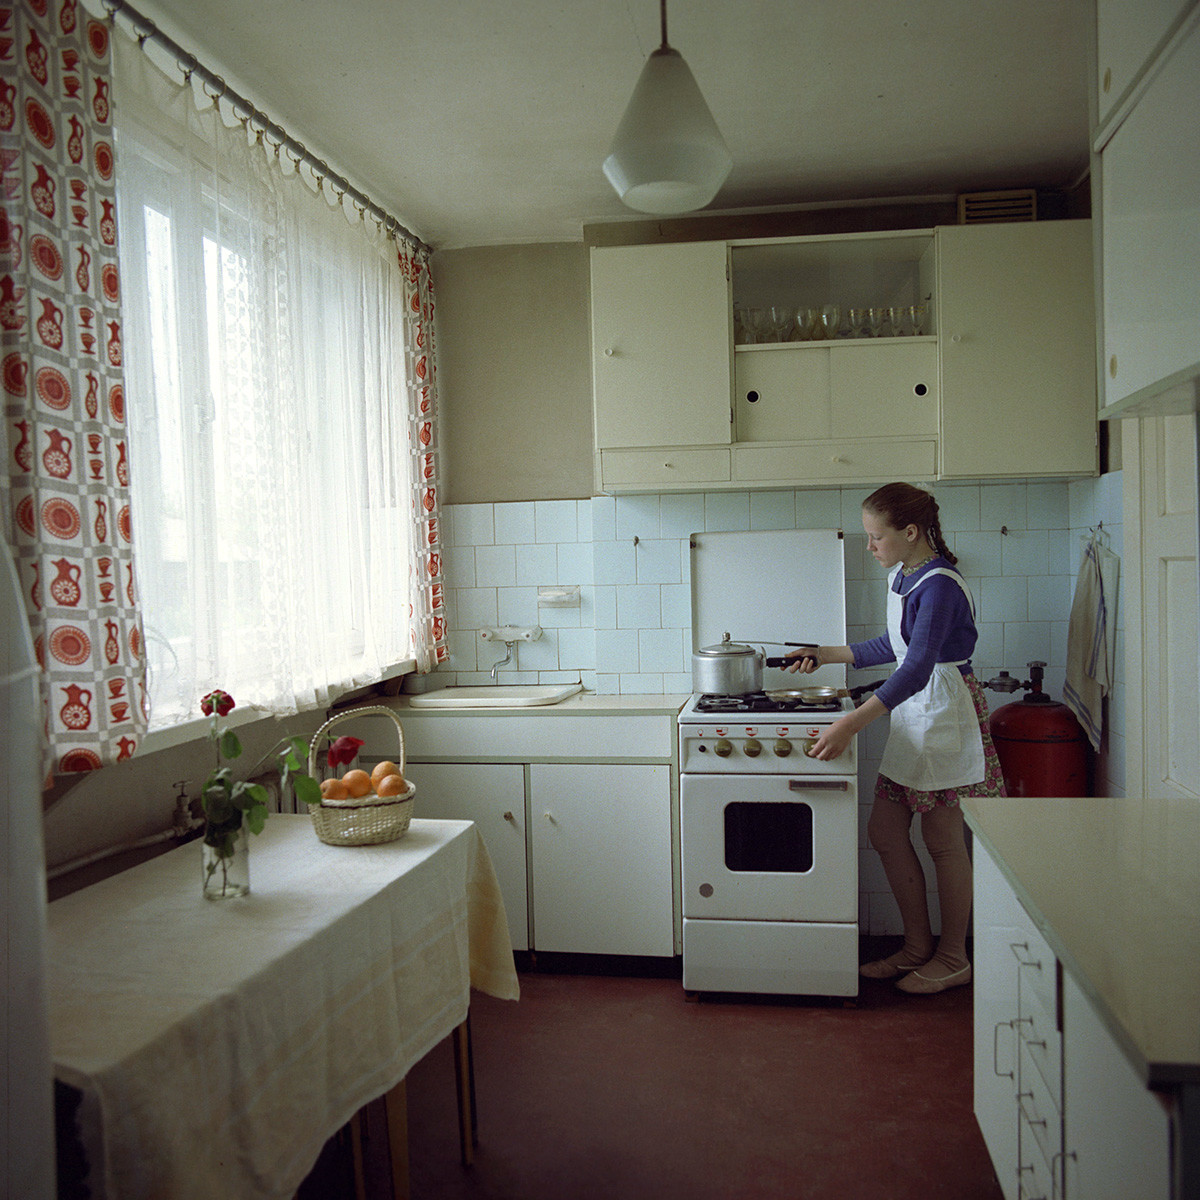 Una cocina en la Letonia soviética